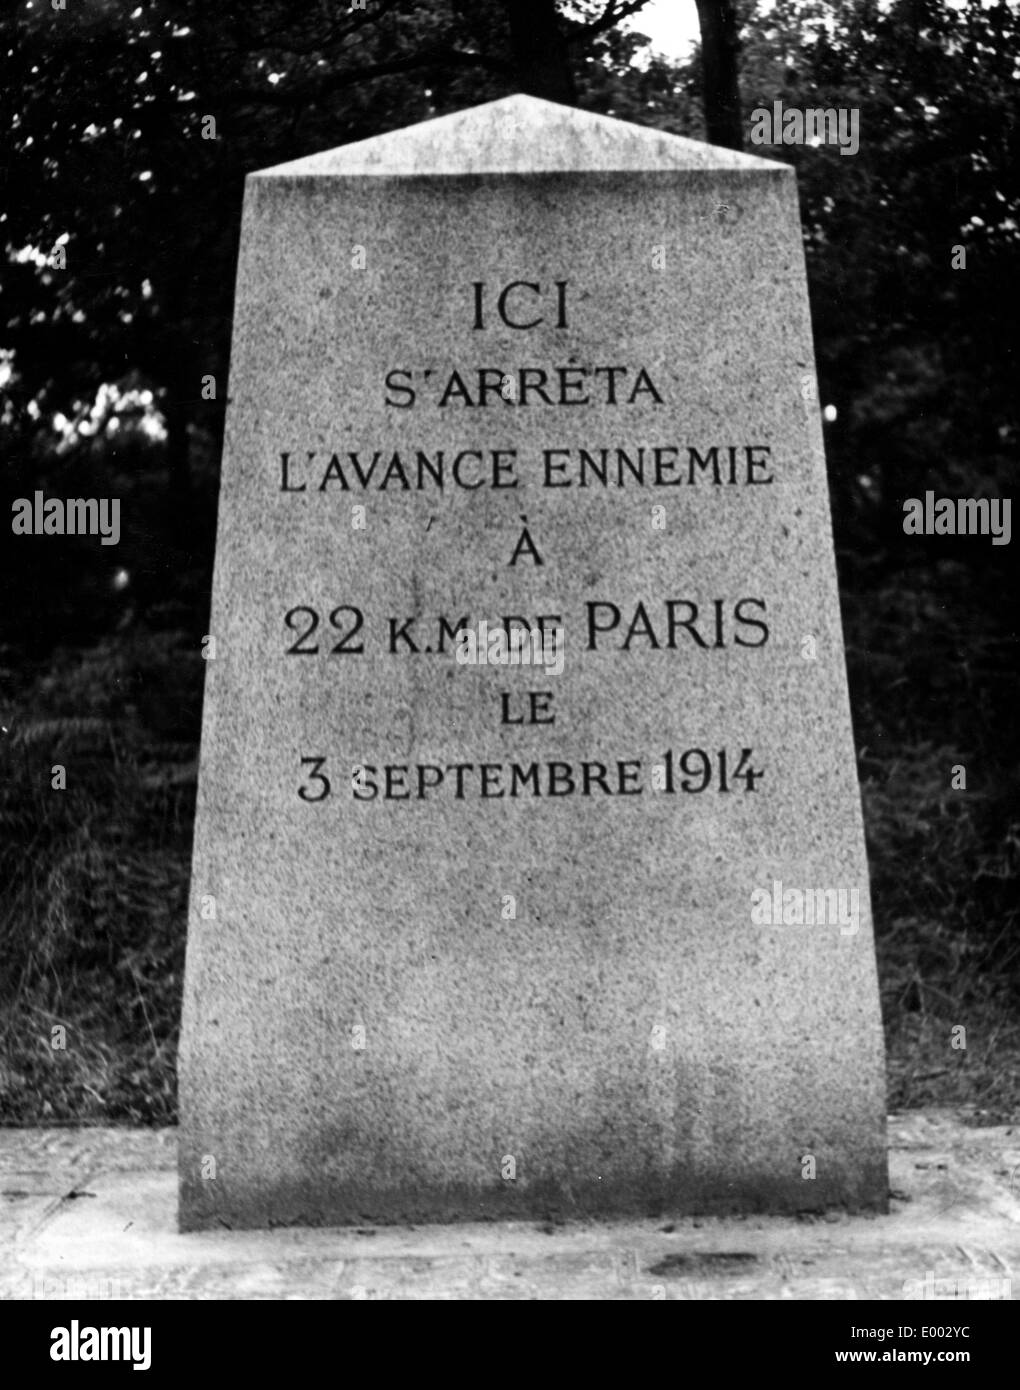 Memorial stone in France, 1914 Stock Photo